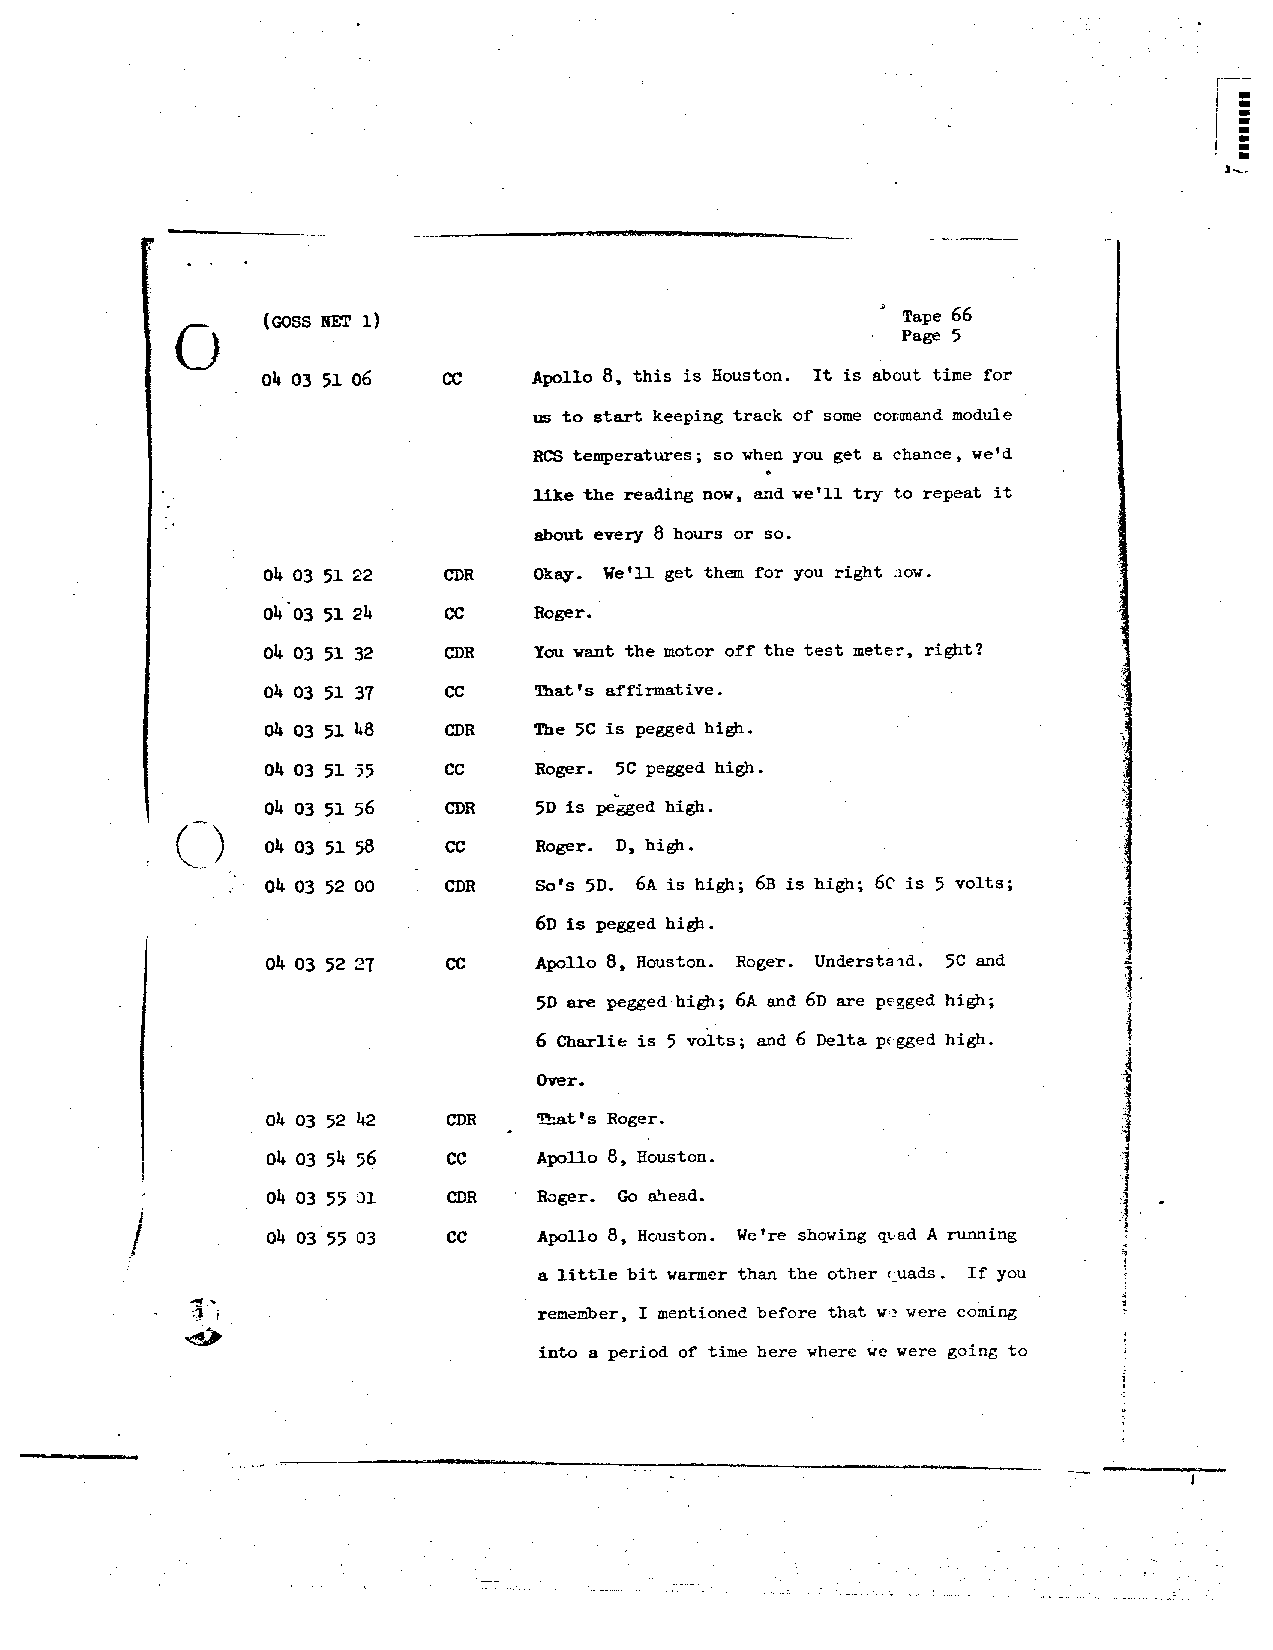 Page 524 of Apollo 8’s original transcript